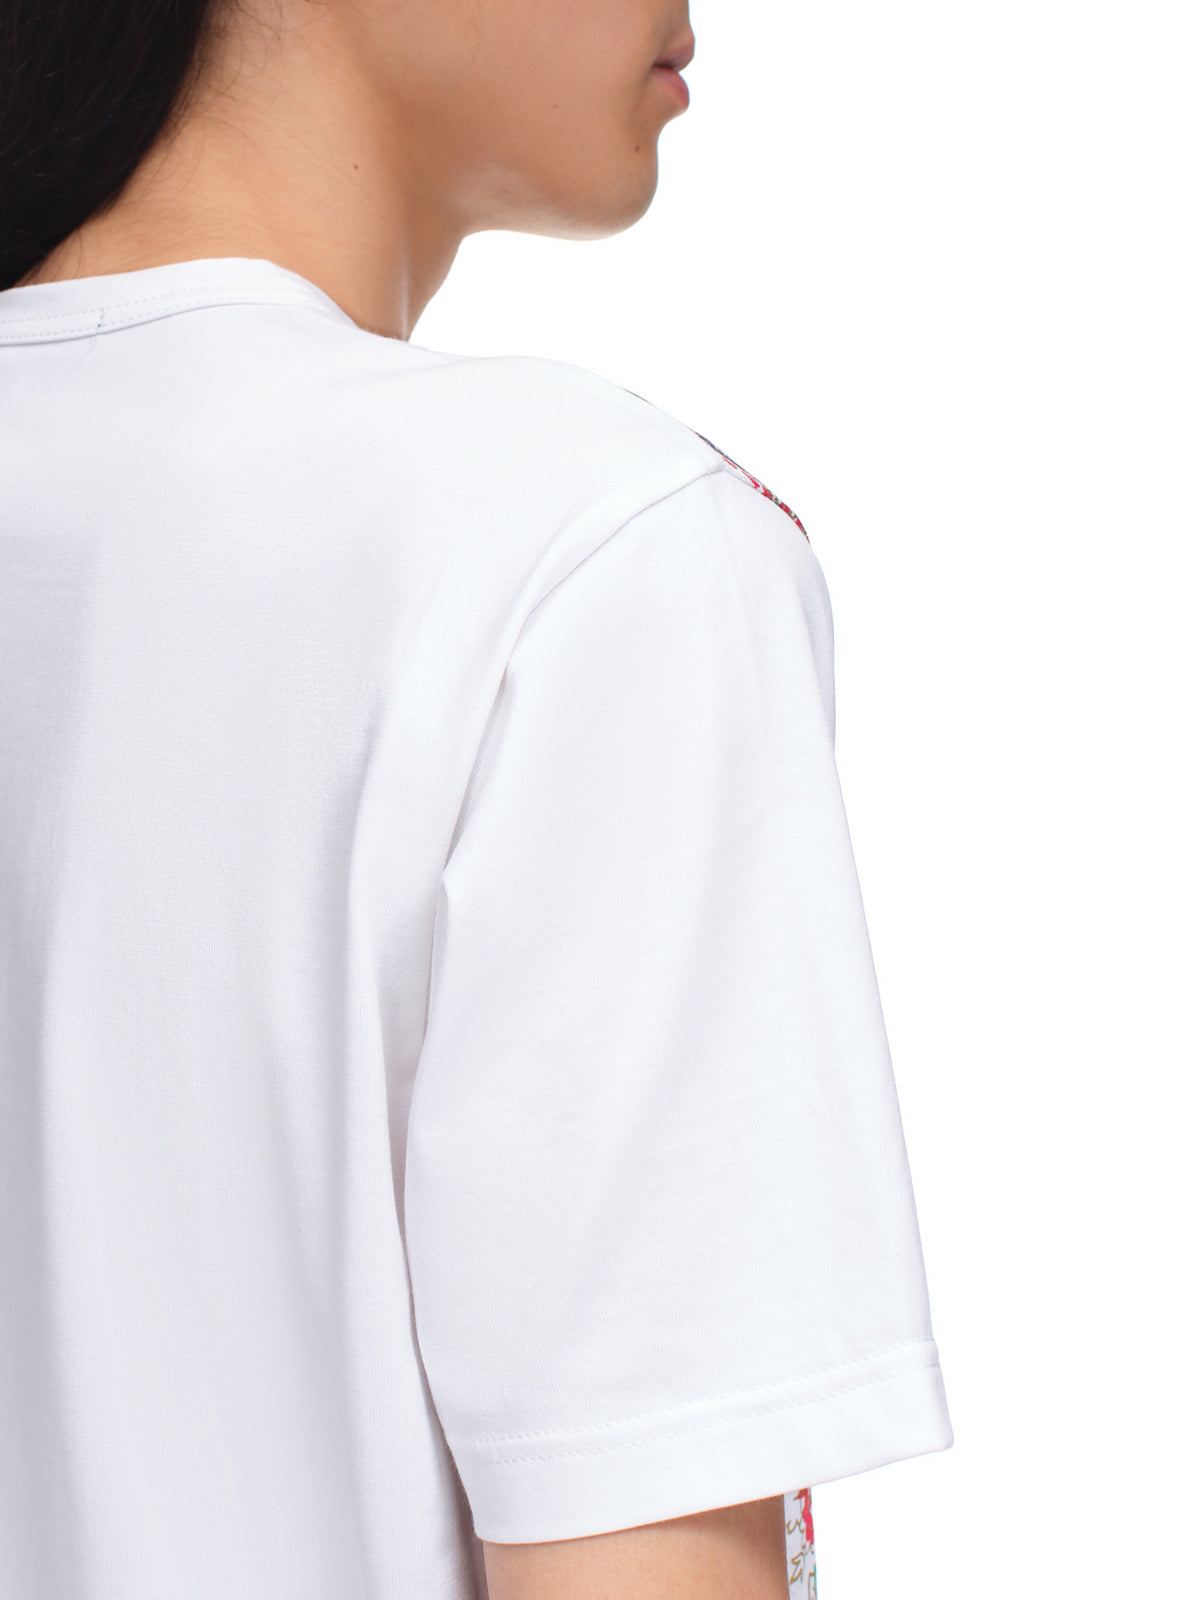 Junya Watanabe Paisley Shirt | H. Lorenzo - detail 2